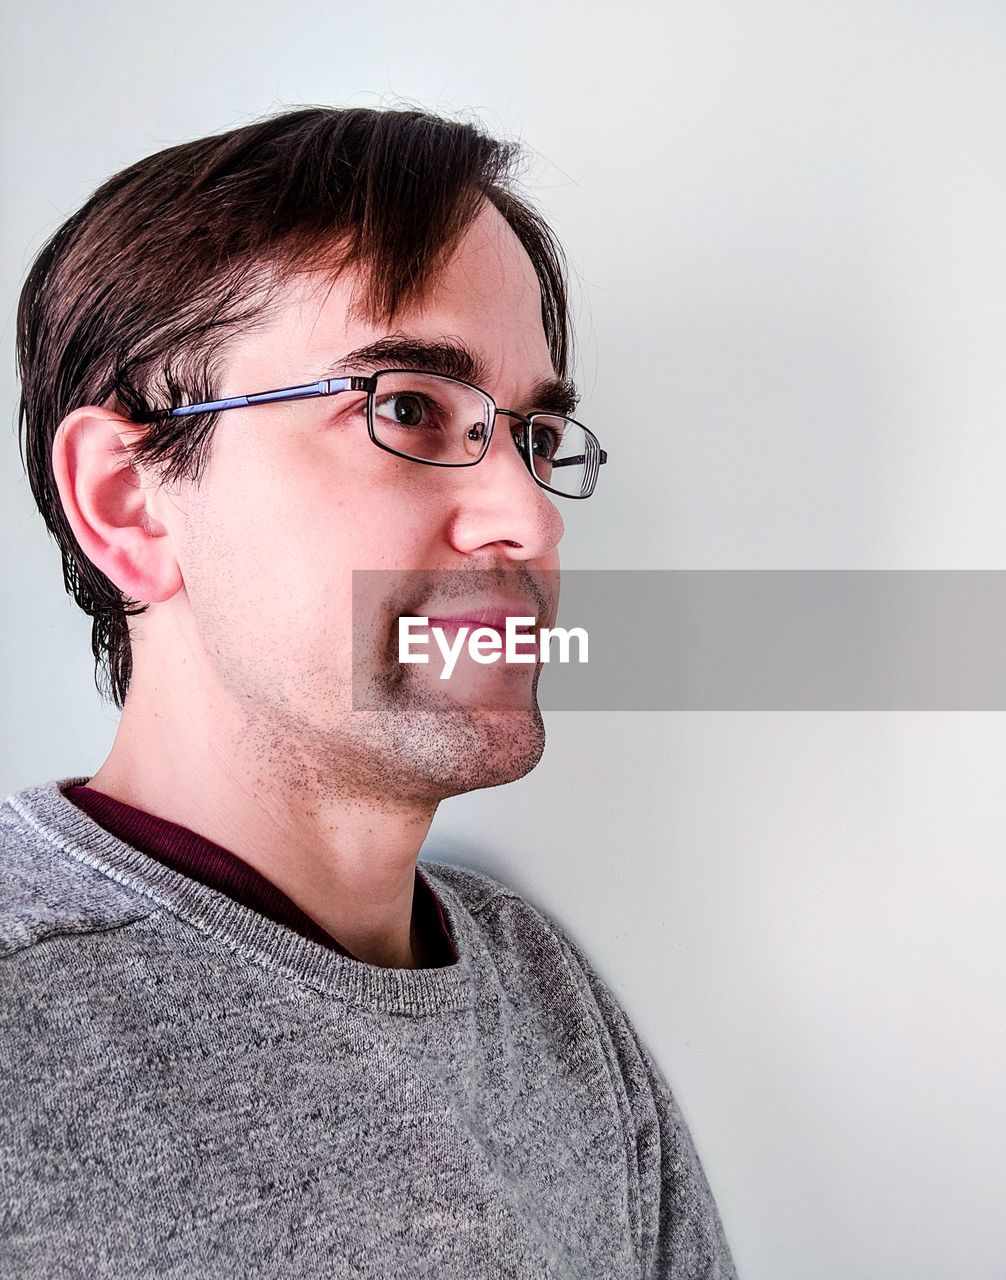 Man in eyeglasses looking away against white background